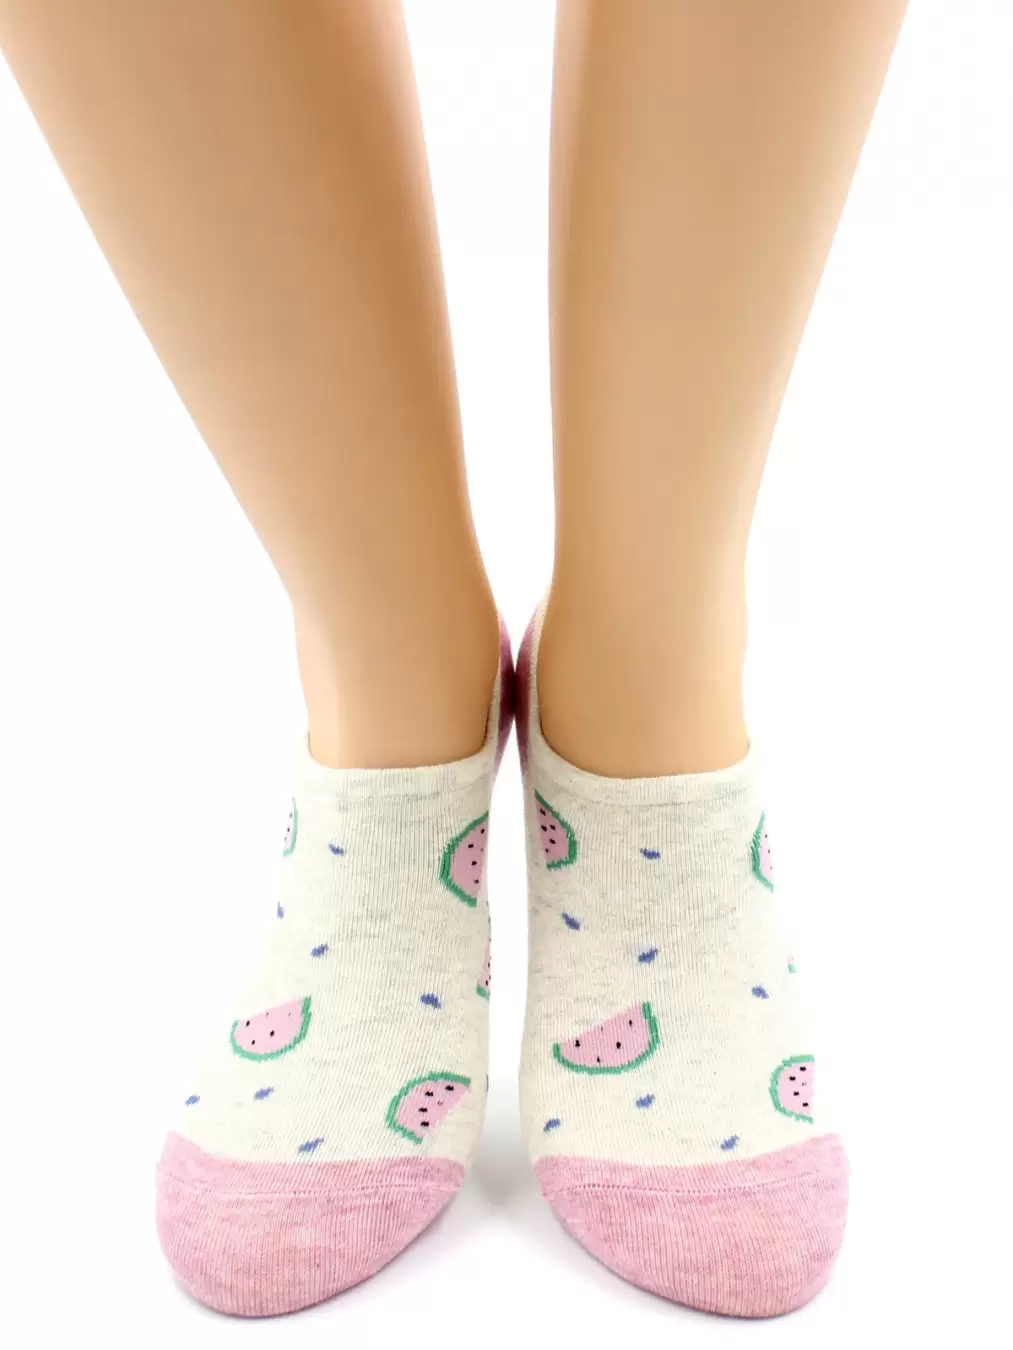 Hobby Line 16-15-01, укороченный носки женские Арбузики (изображение 1)